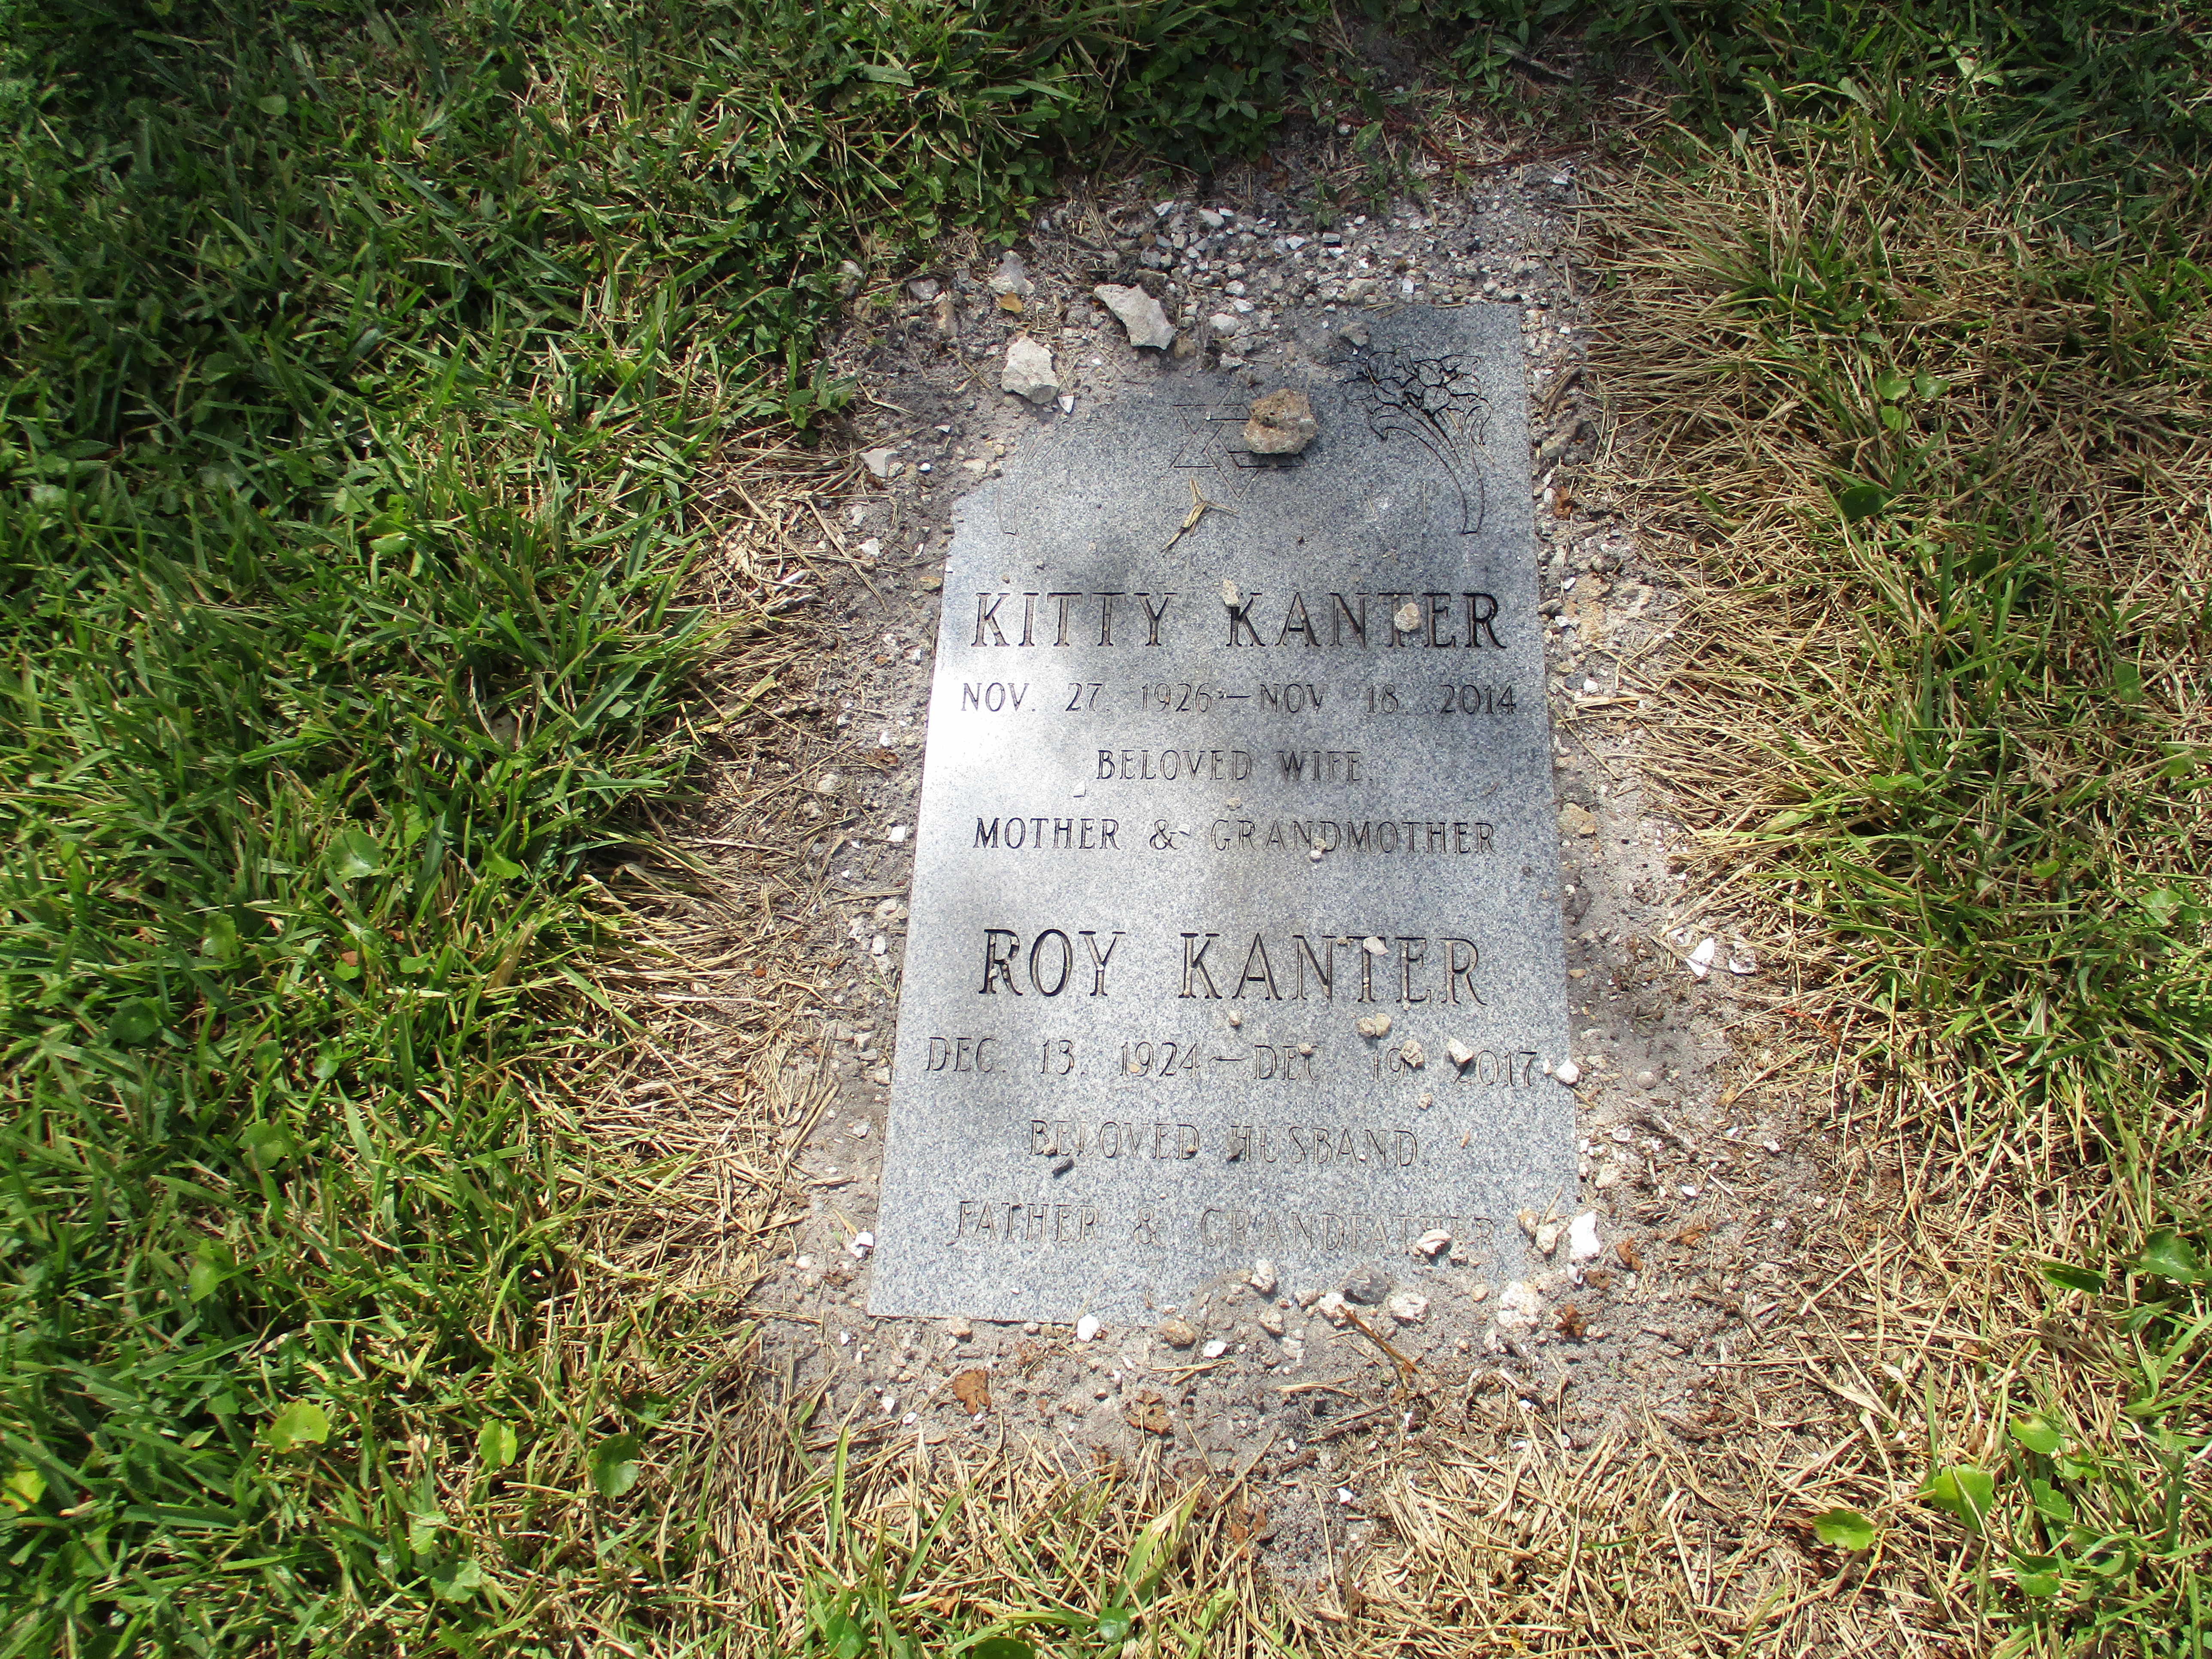 Roy Kanter